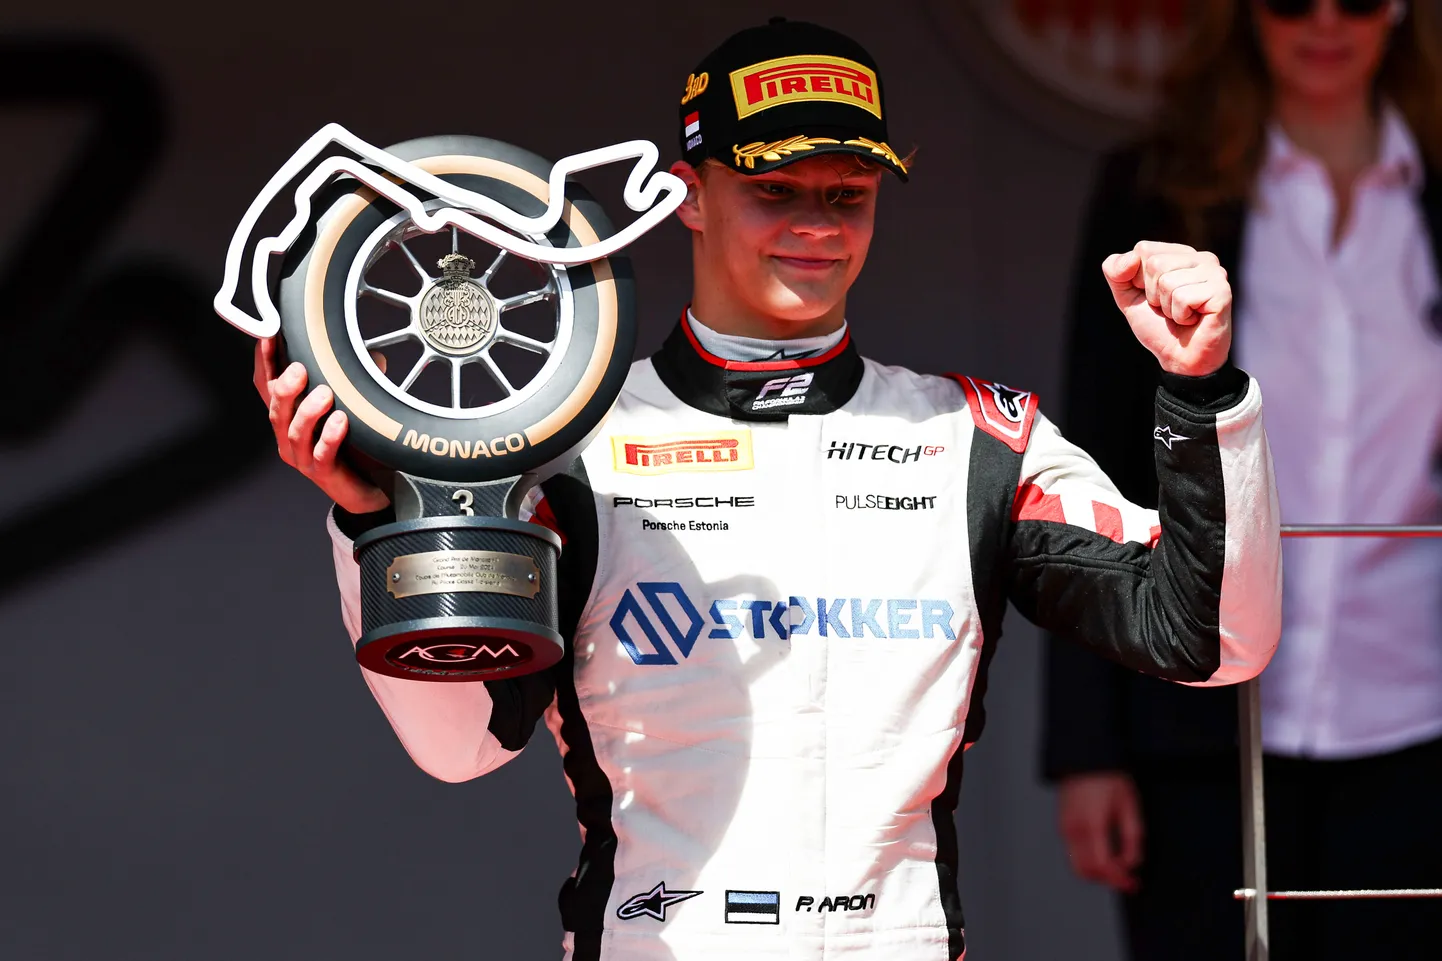 Paul Aron sai F2 Monaco etapi põhisõidus kolmanda koha, tänu millele kerkis sarja üldliidriks. Esikoha hoidmiseks tuleb järgmistel etappidel kõvasti vaeva näha.